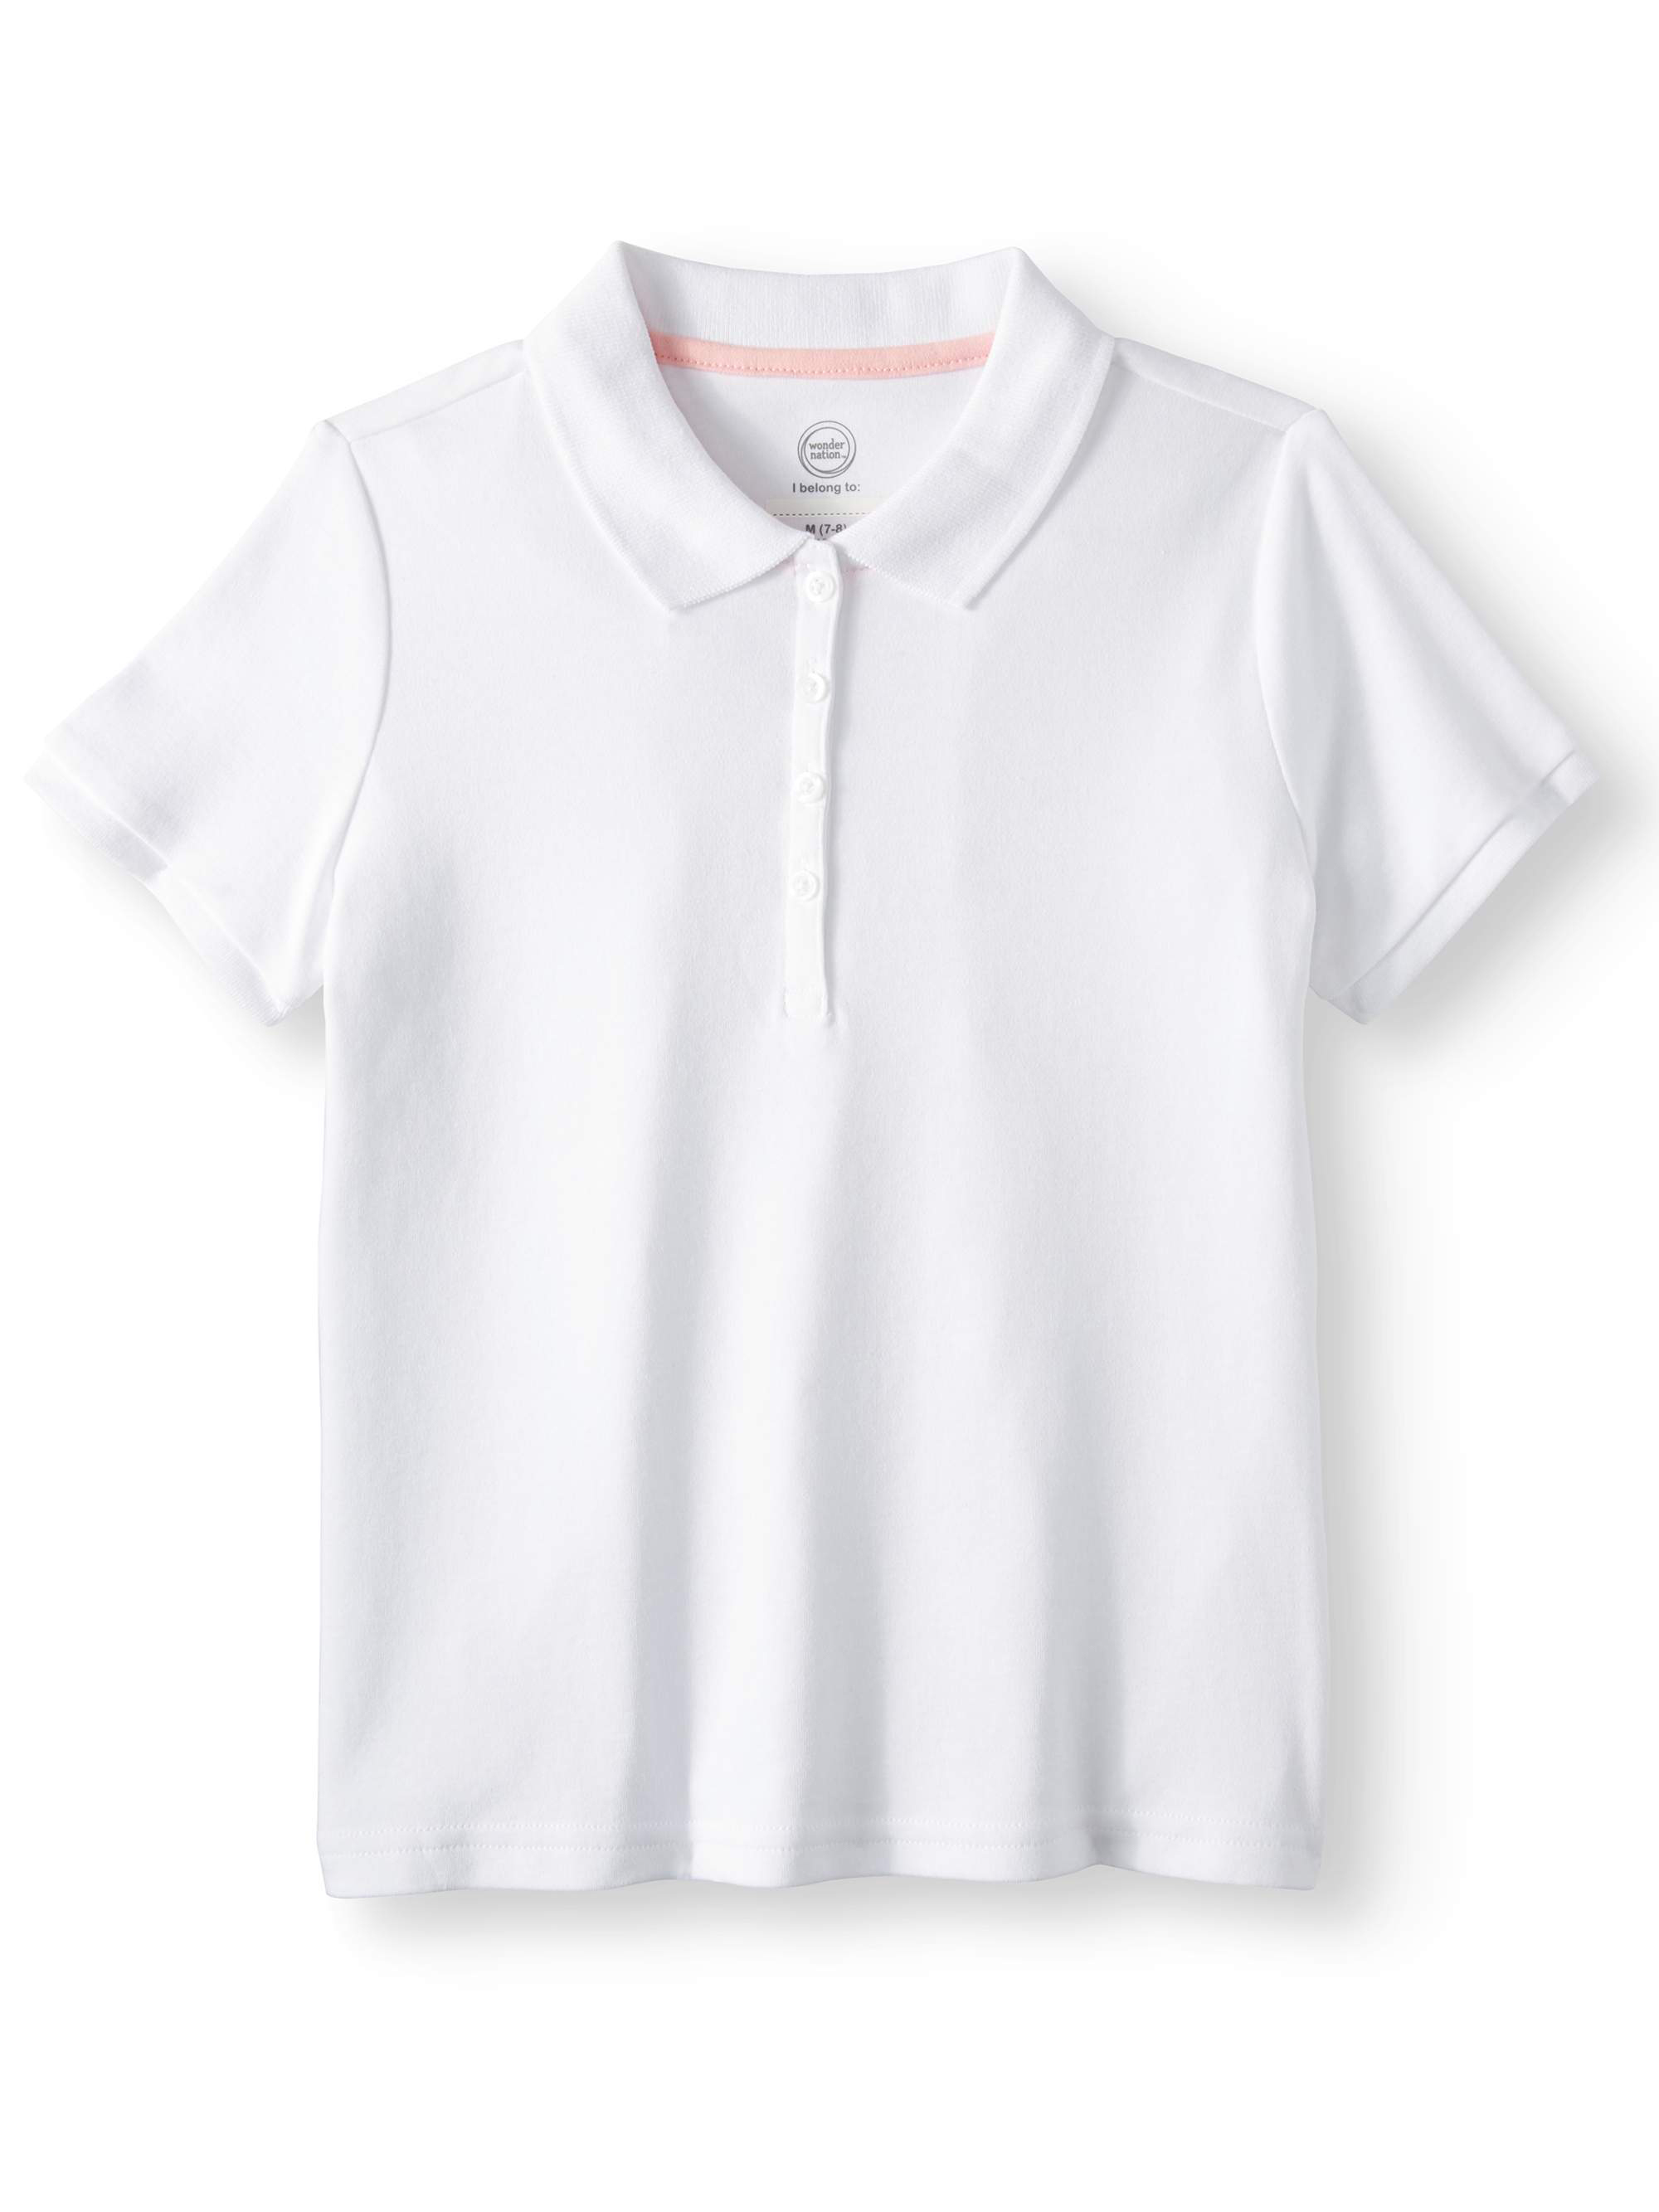 Wonder Nation Girls School Uniform Short Sleeve Interlock Polo Shirt, 2-Pack Value Bundle, Sizes 4-18 - image 4 of 8